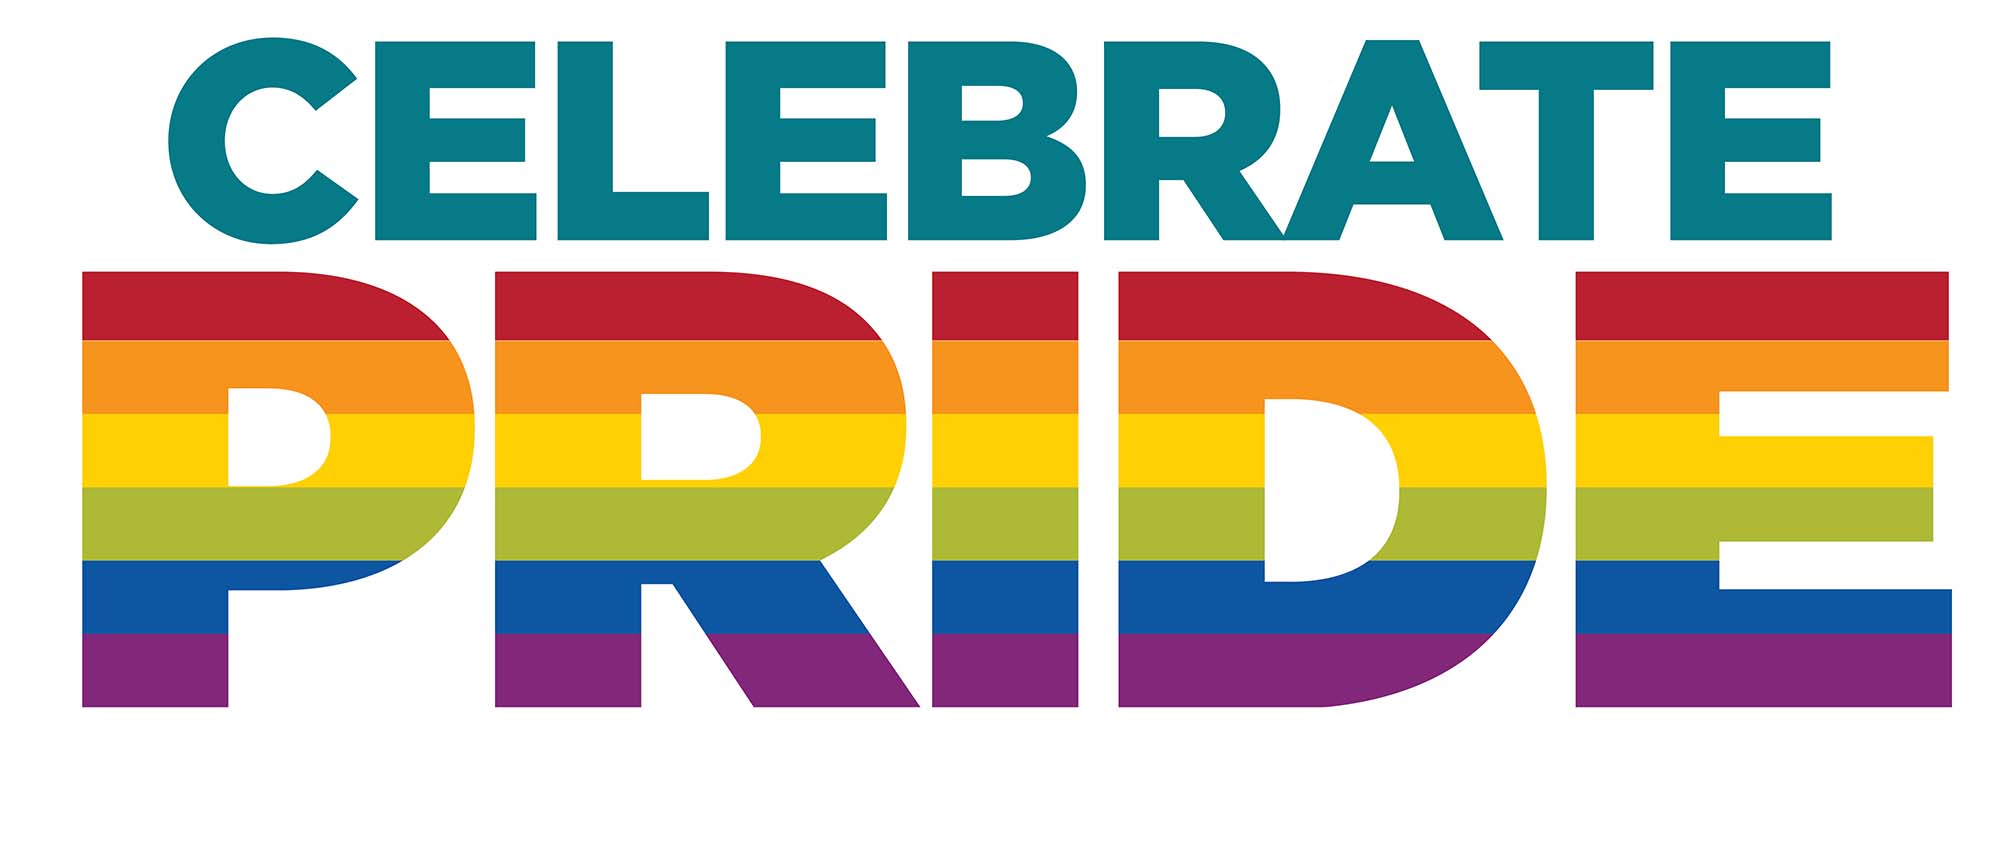 Gráfico UNM que diz "Celebrate Pride" com orgulho colorido como um arco-íris